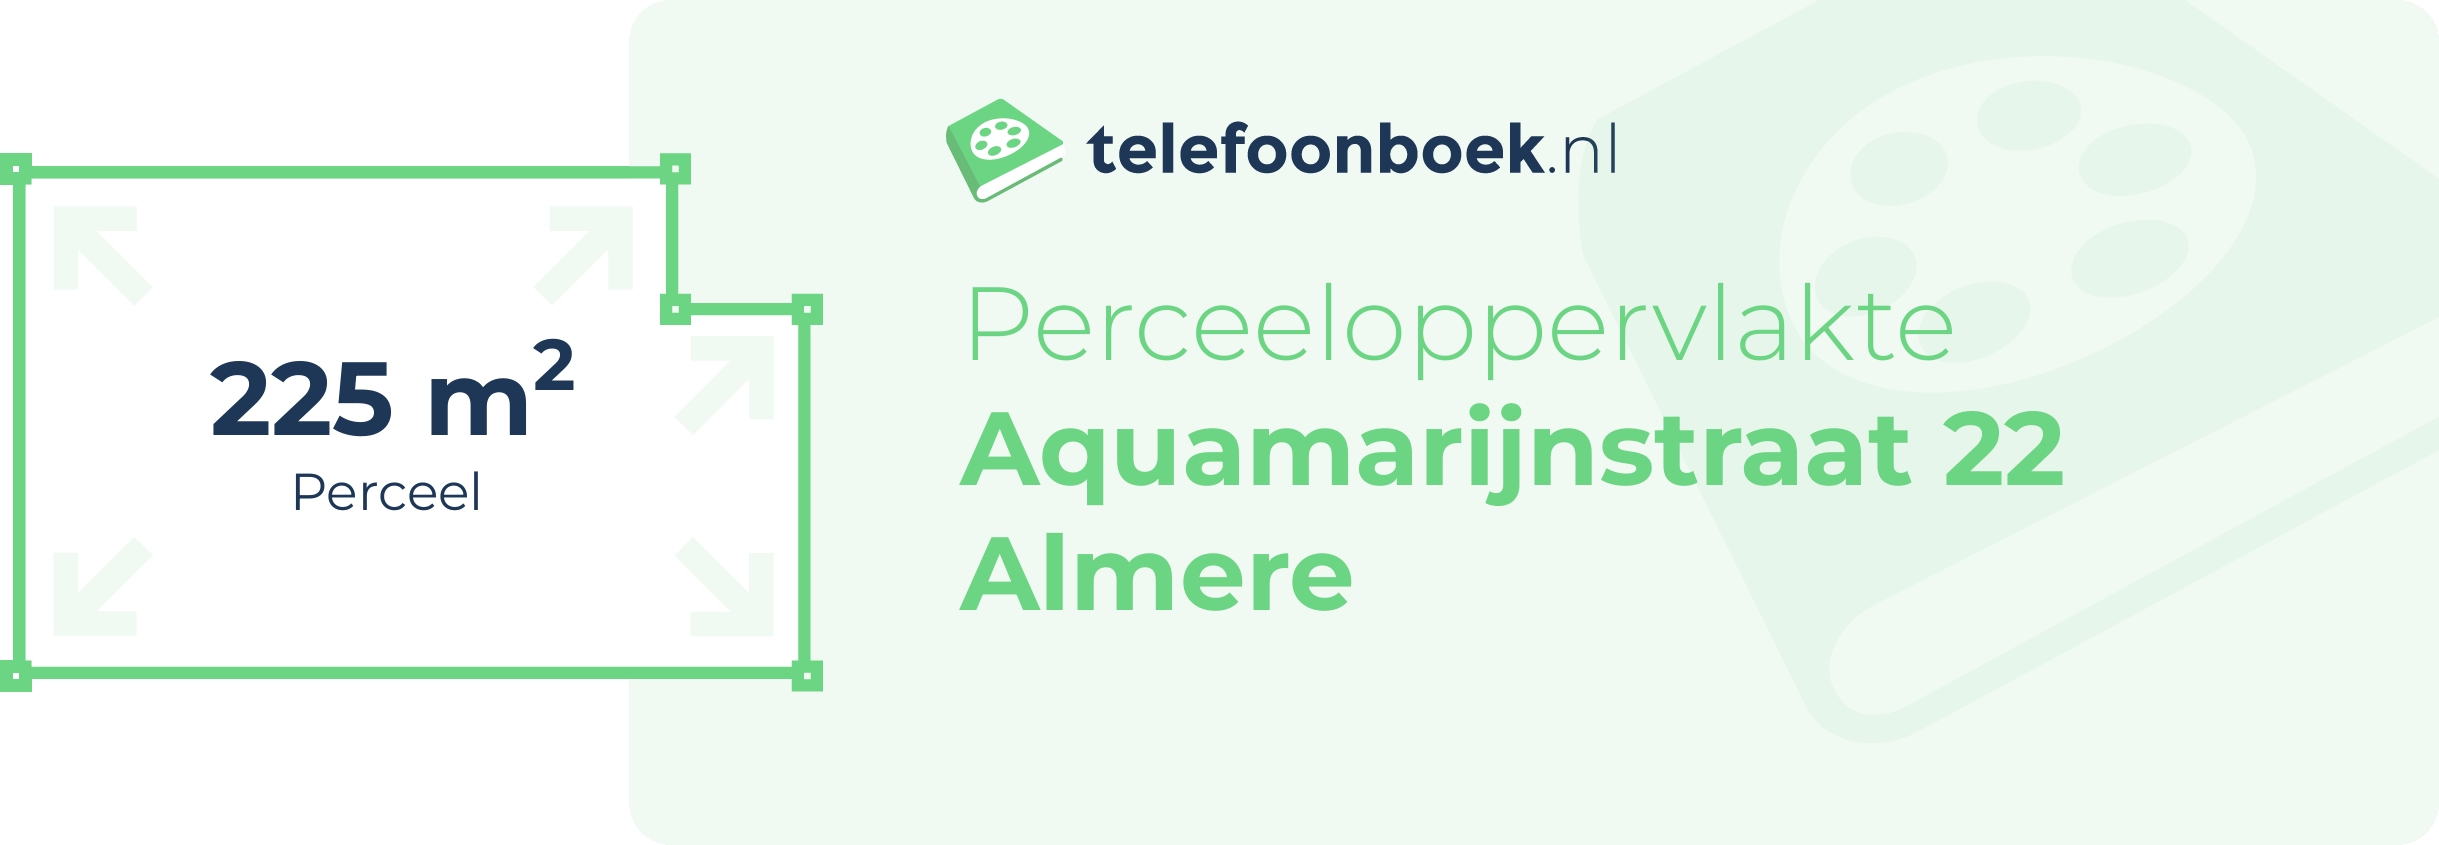 Perceeloppervlakte Aquamarijnstraat 22 Almere